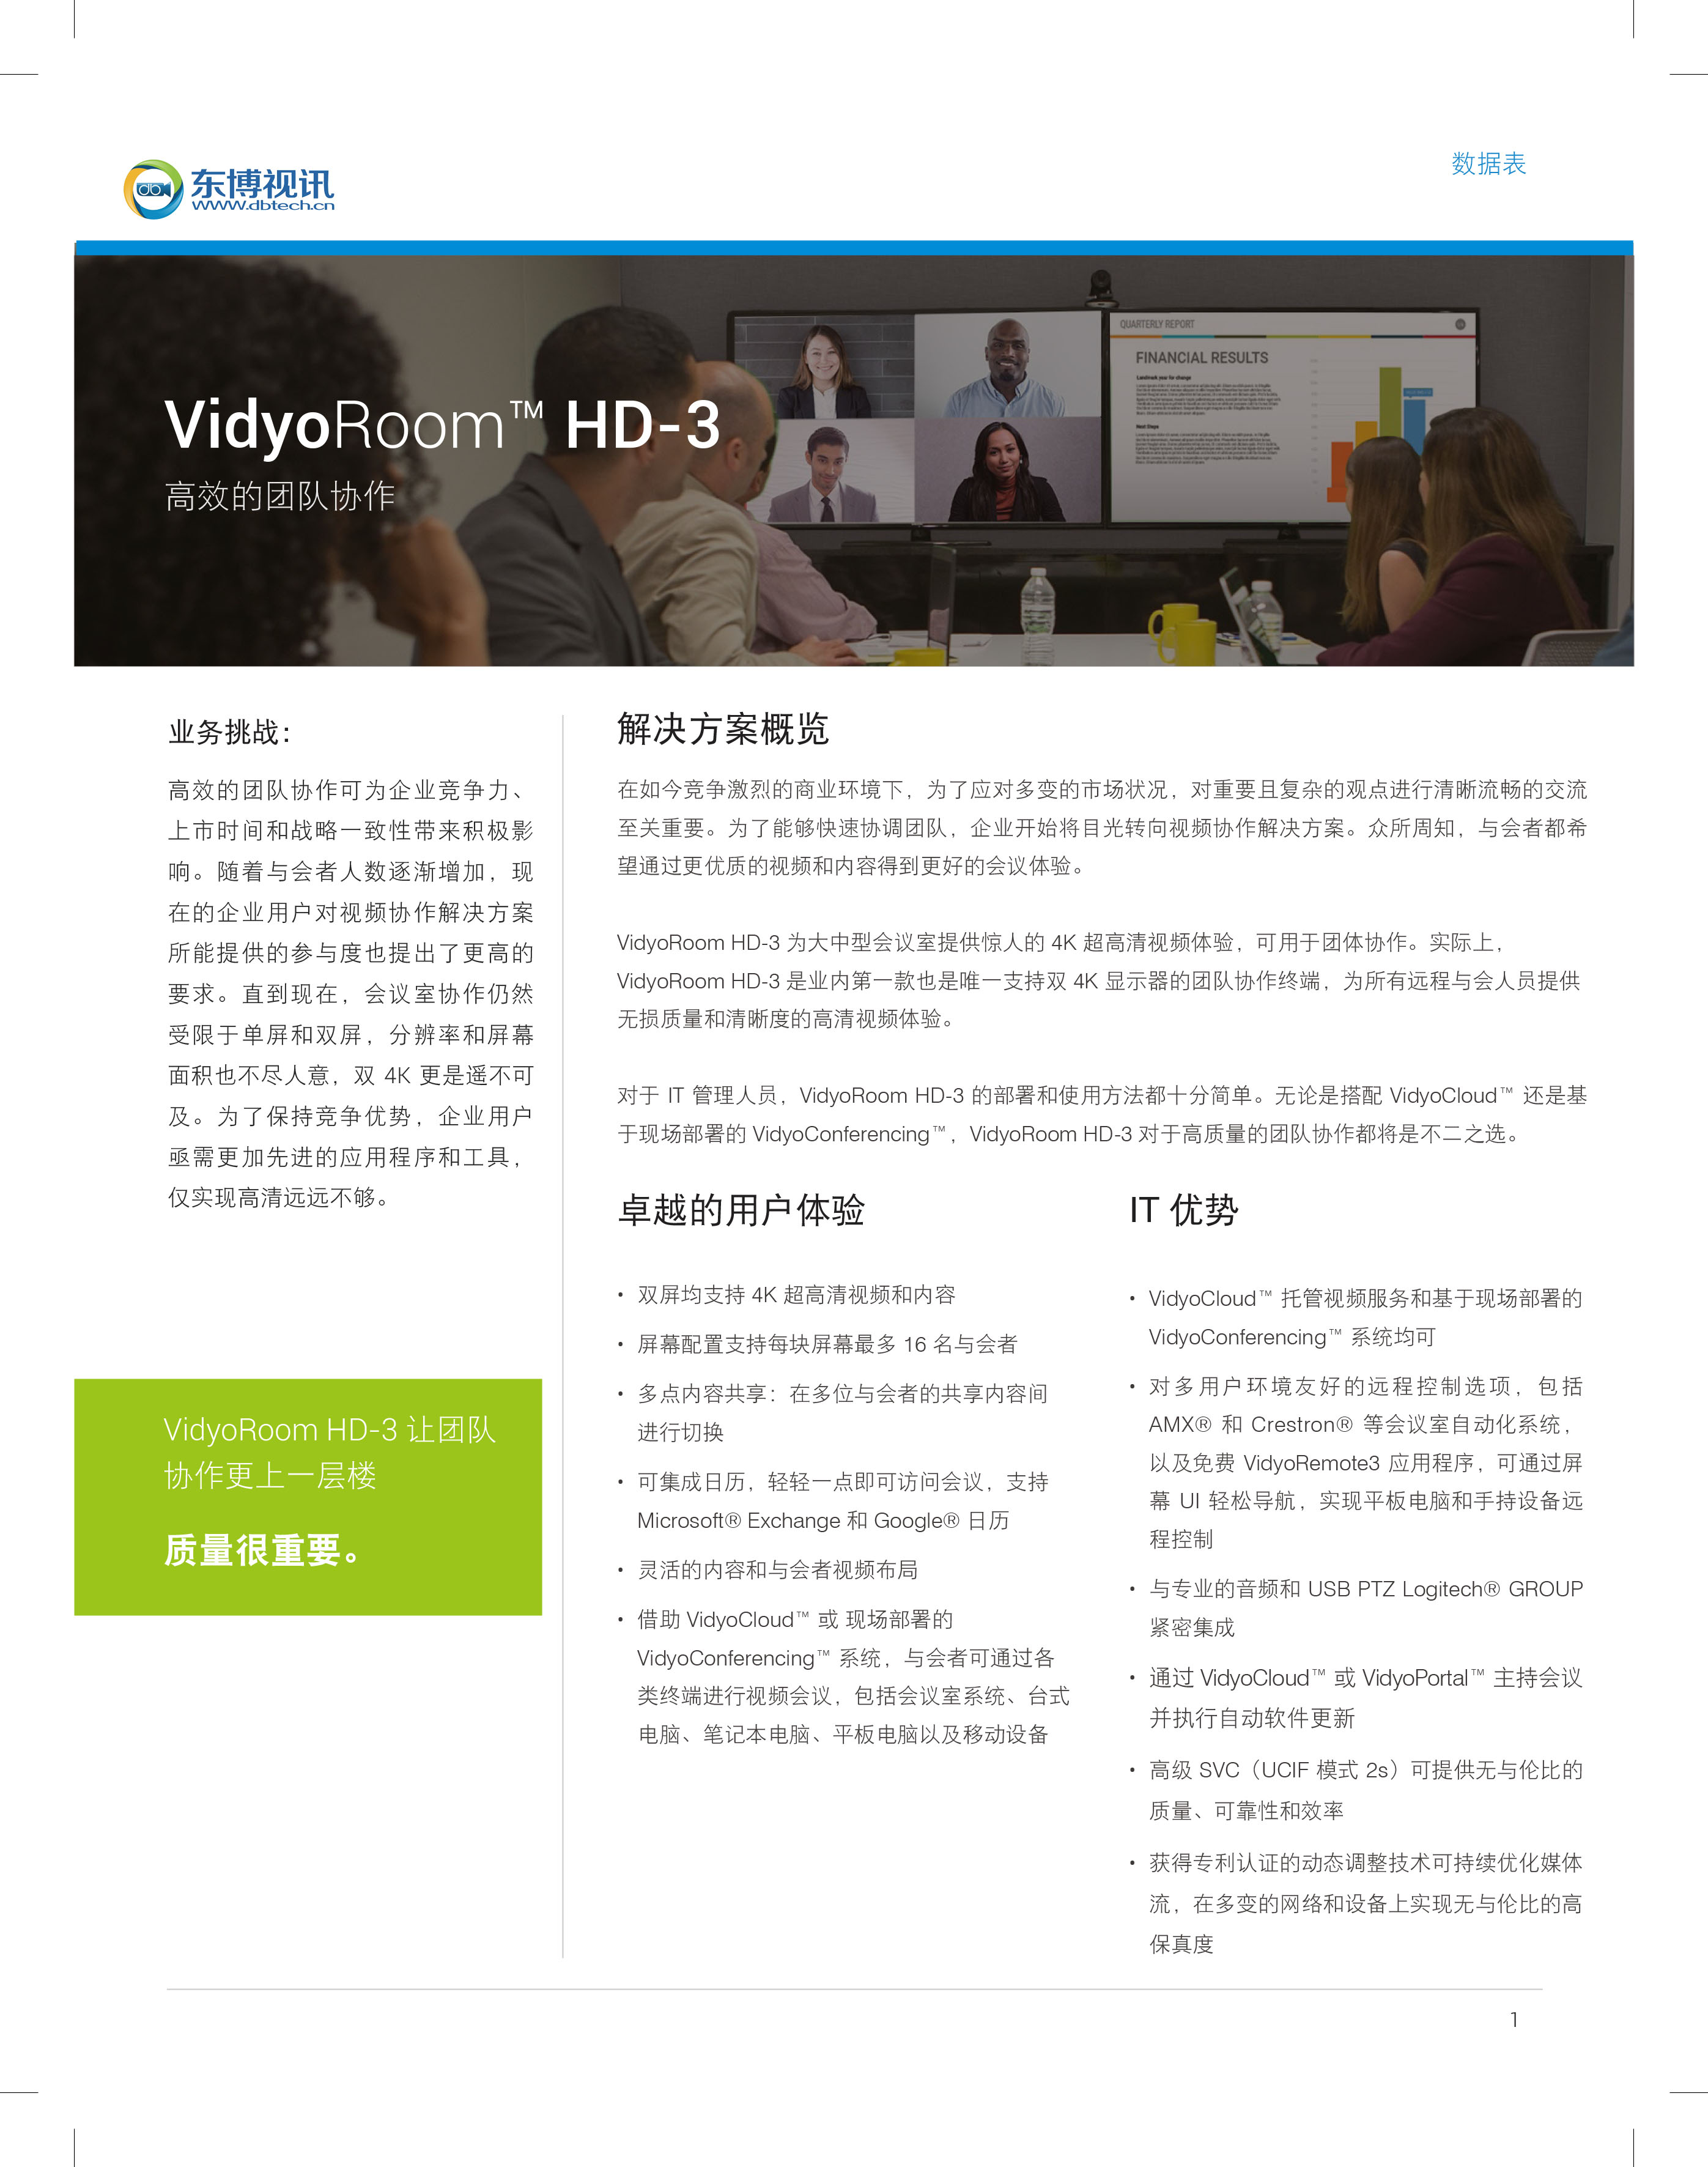 DS-VidyoRoom-HD-3